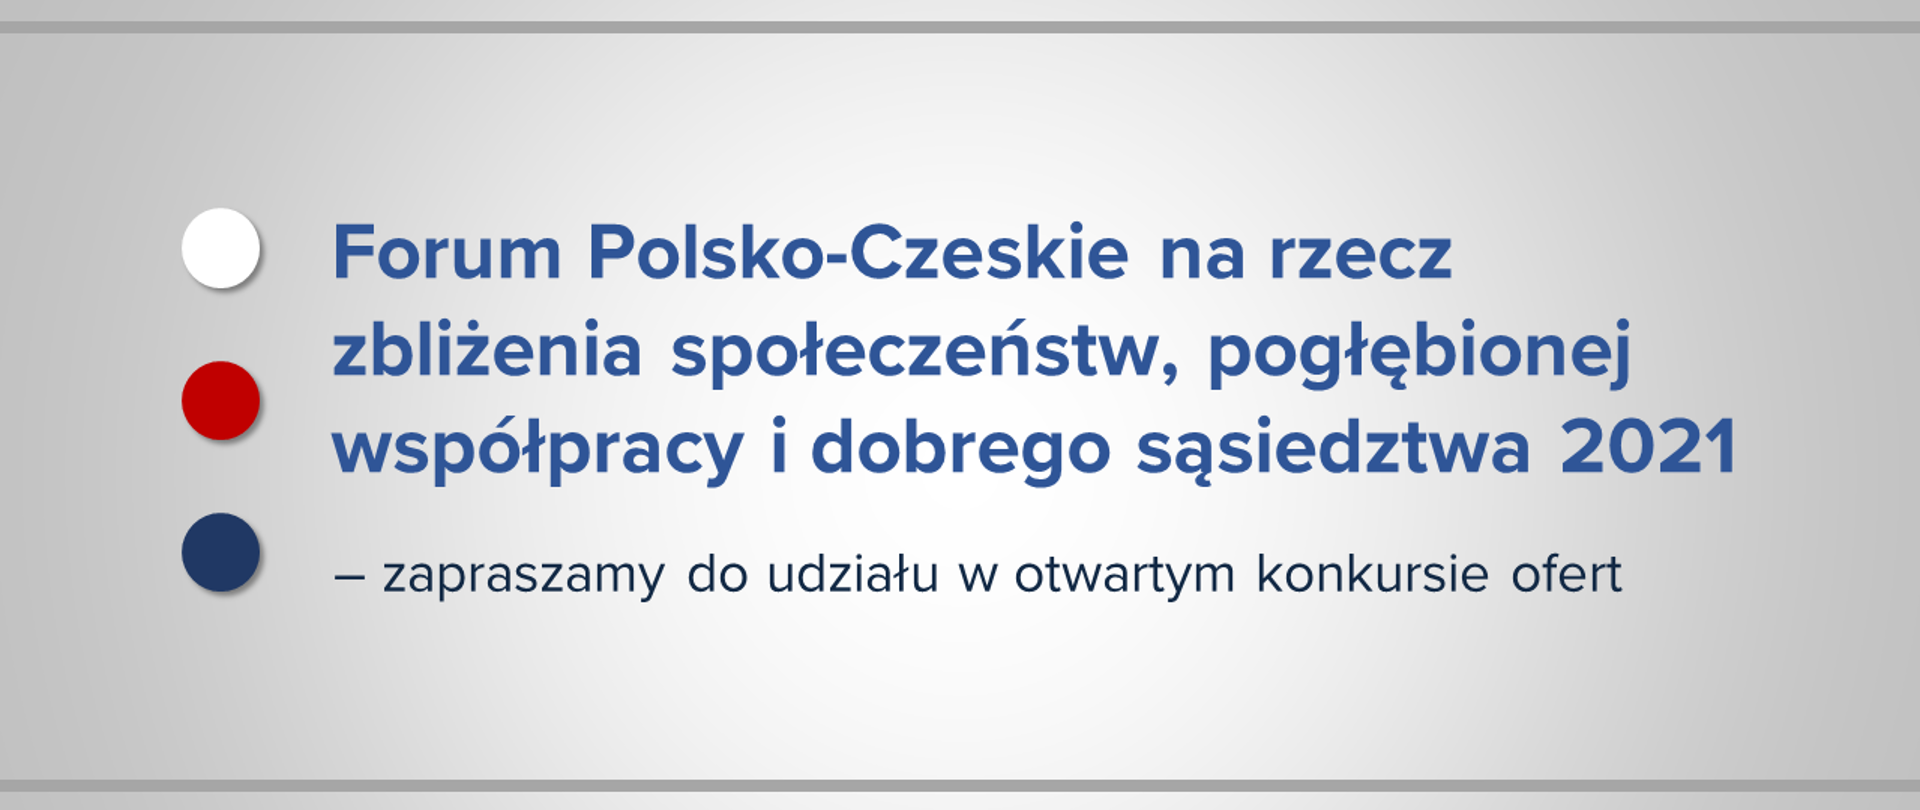 Jasna grafika z tekstem "Forum Polsko-Czeskie na rzecz zbliżenia społeczeństw, pogłębionej współpracy i dobrego sąsiedztwa 2021 – zapraszamy do udziału w otwartym konkursie ofert".